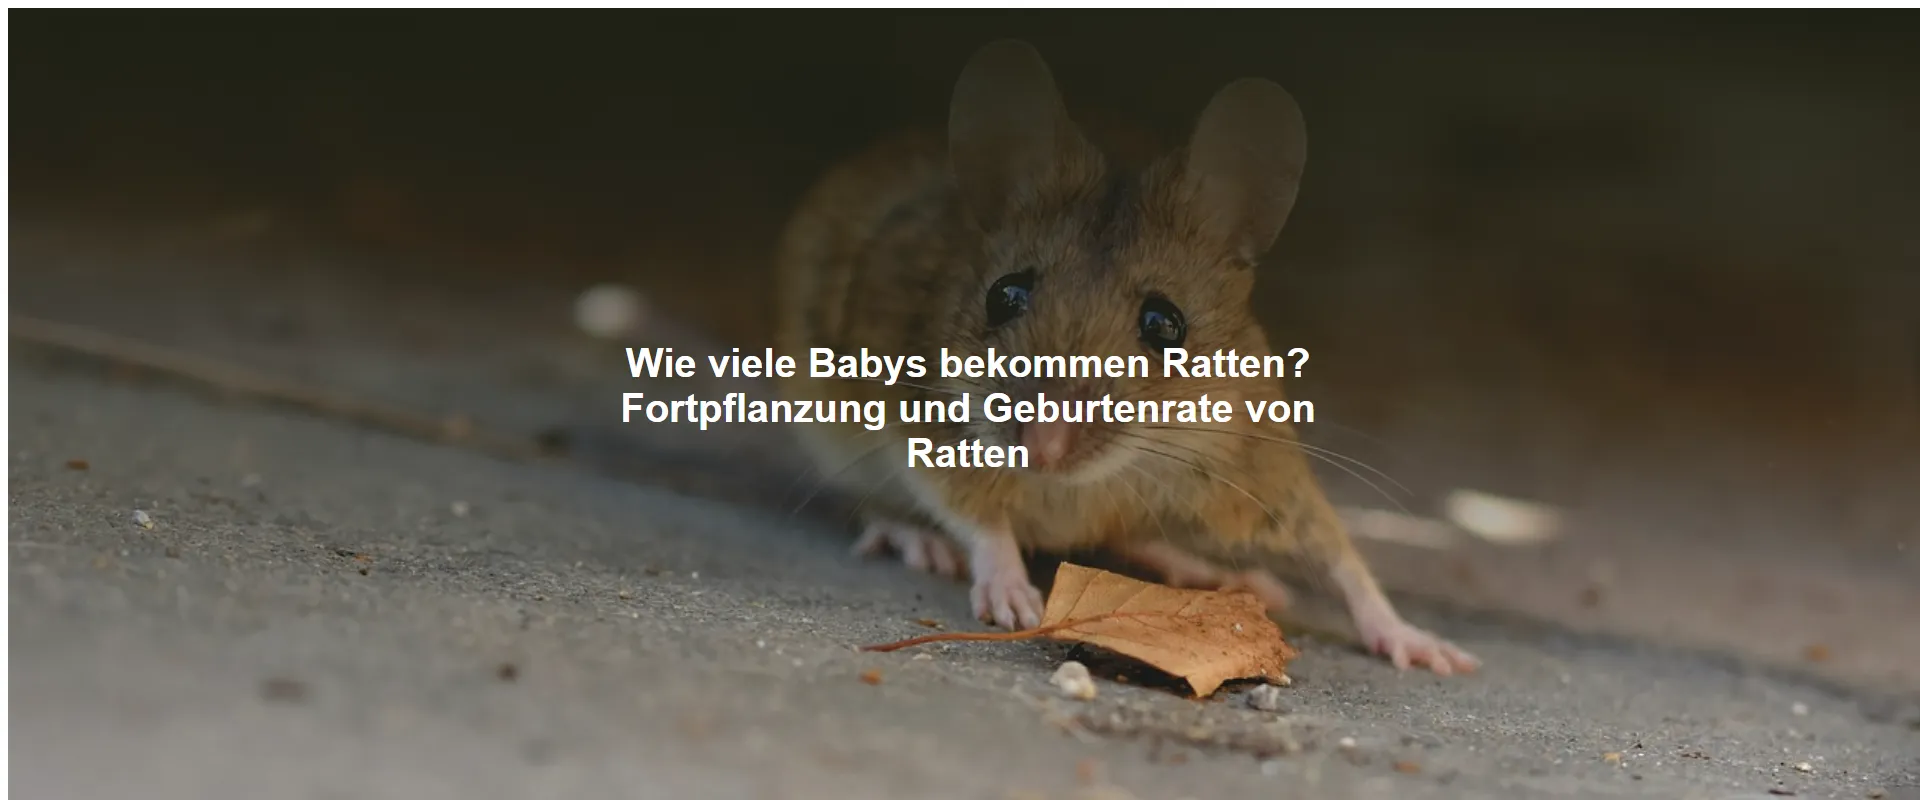 Wie viele Babys bekommen Ratten? Fortpflanzung und Geburtenrate von Ratten